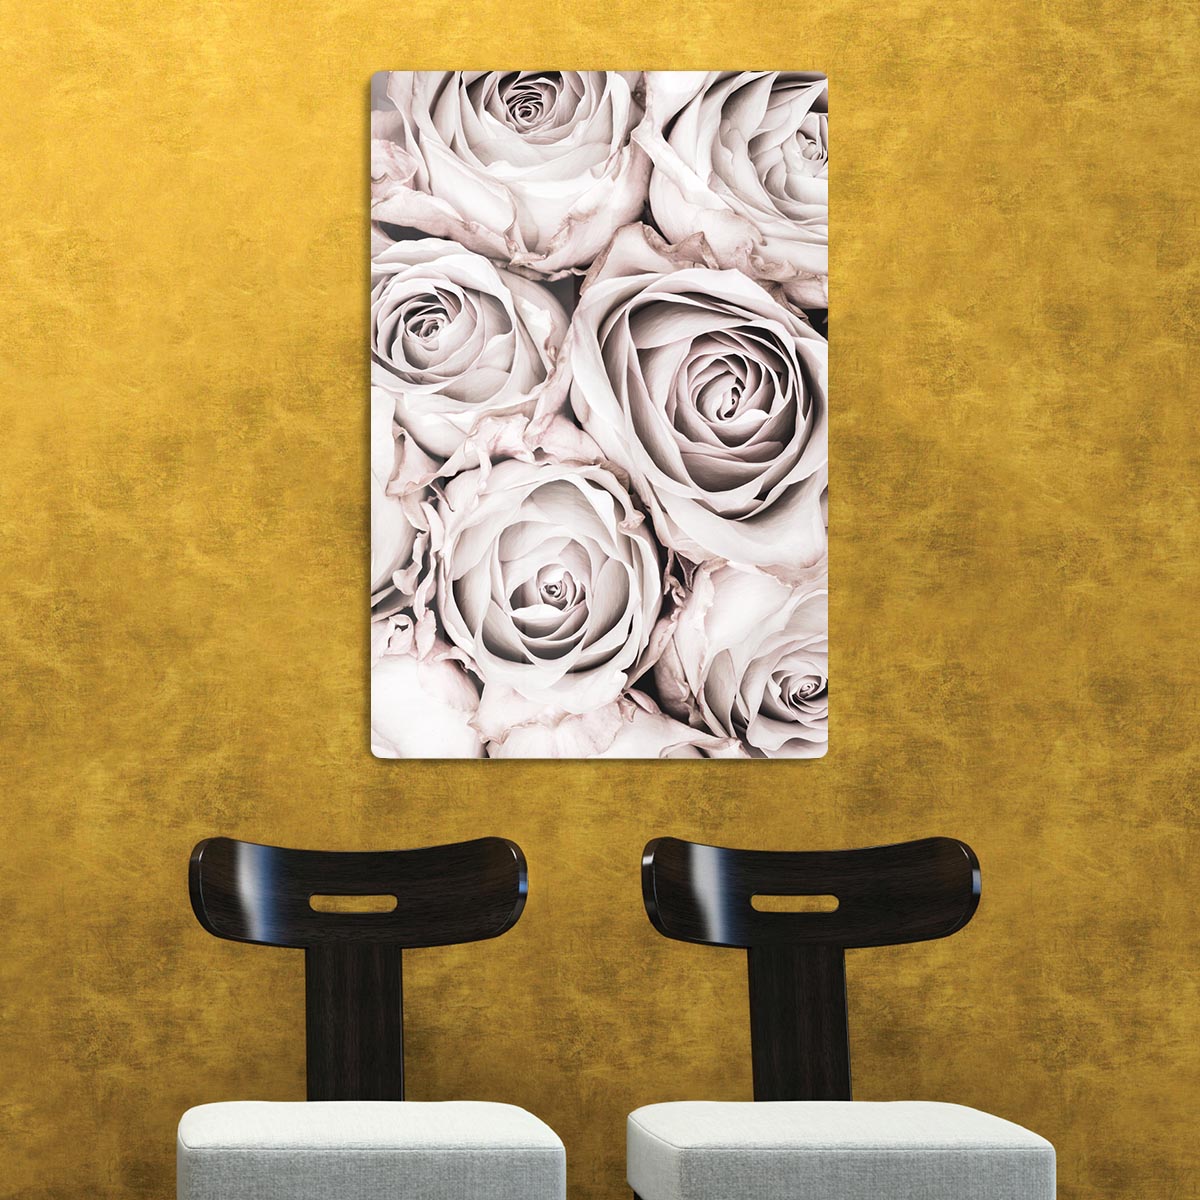 Grey Roses No 01 HD Metal Print - Canvas Art Rocks - 2